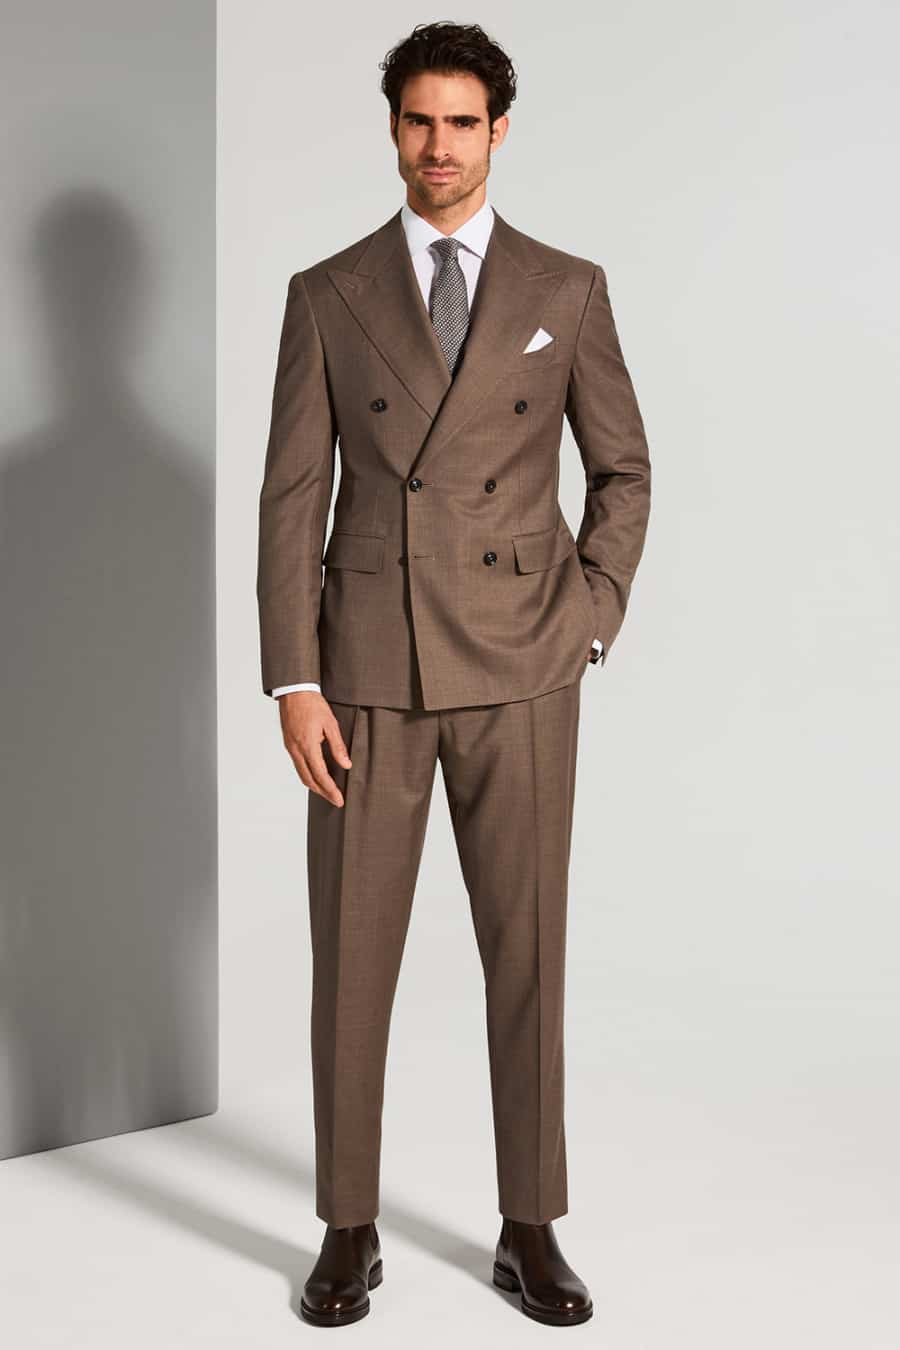 Men's brown suit worn with dark brown Chelsea boots